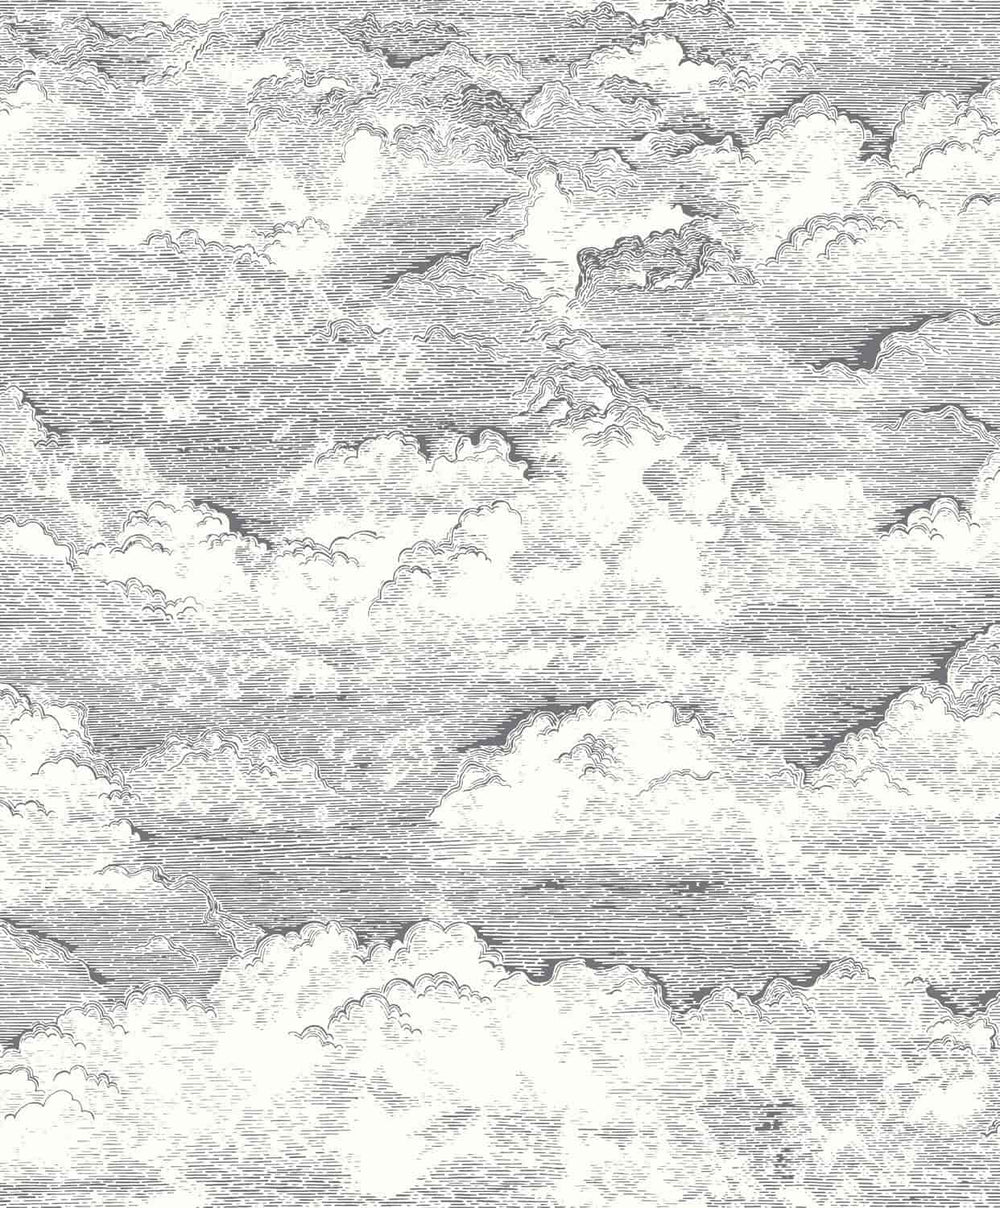 ONIR87279907-Casadeco-Voyage Onirique - Songe Noir Gravure Cloud Wallpaper-Decor Warehouse